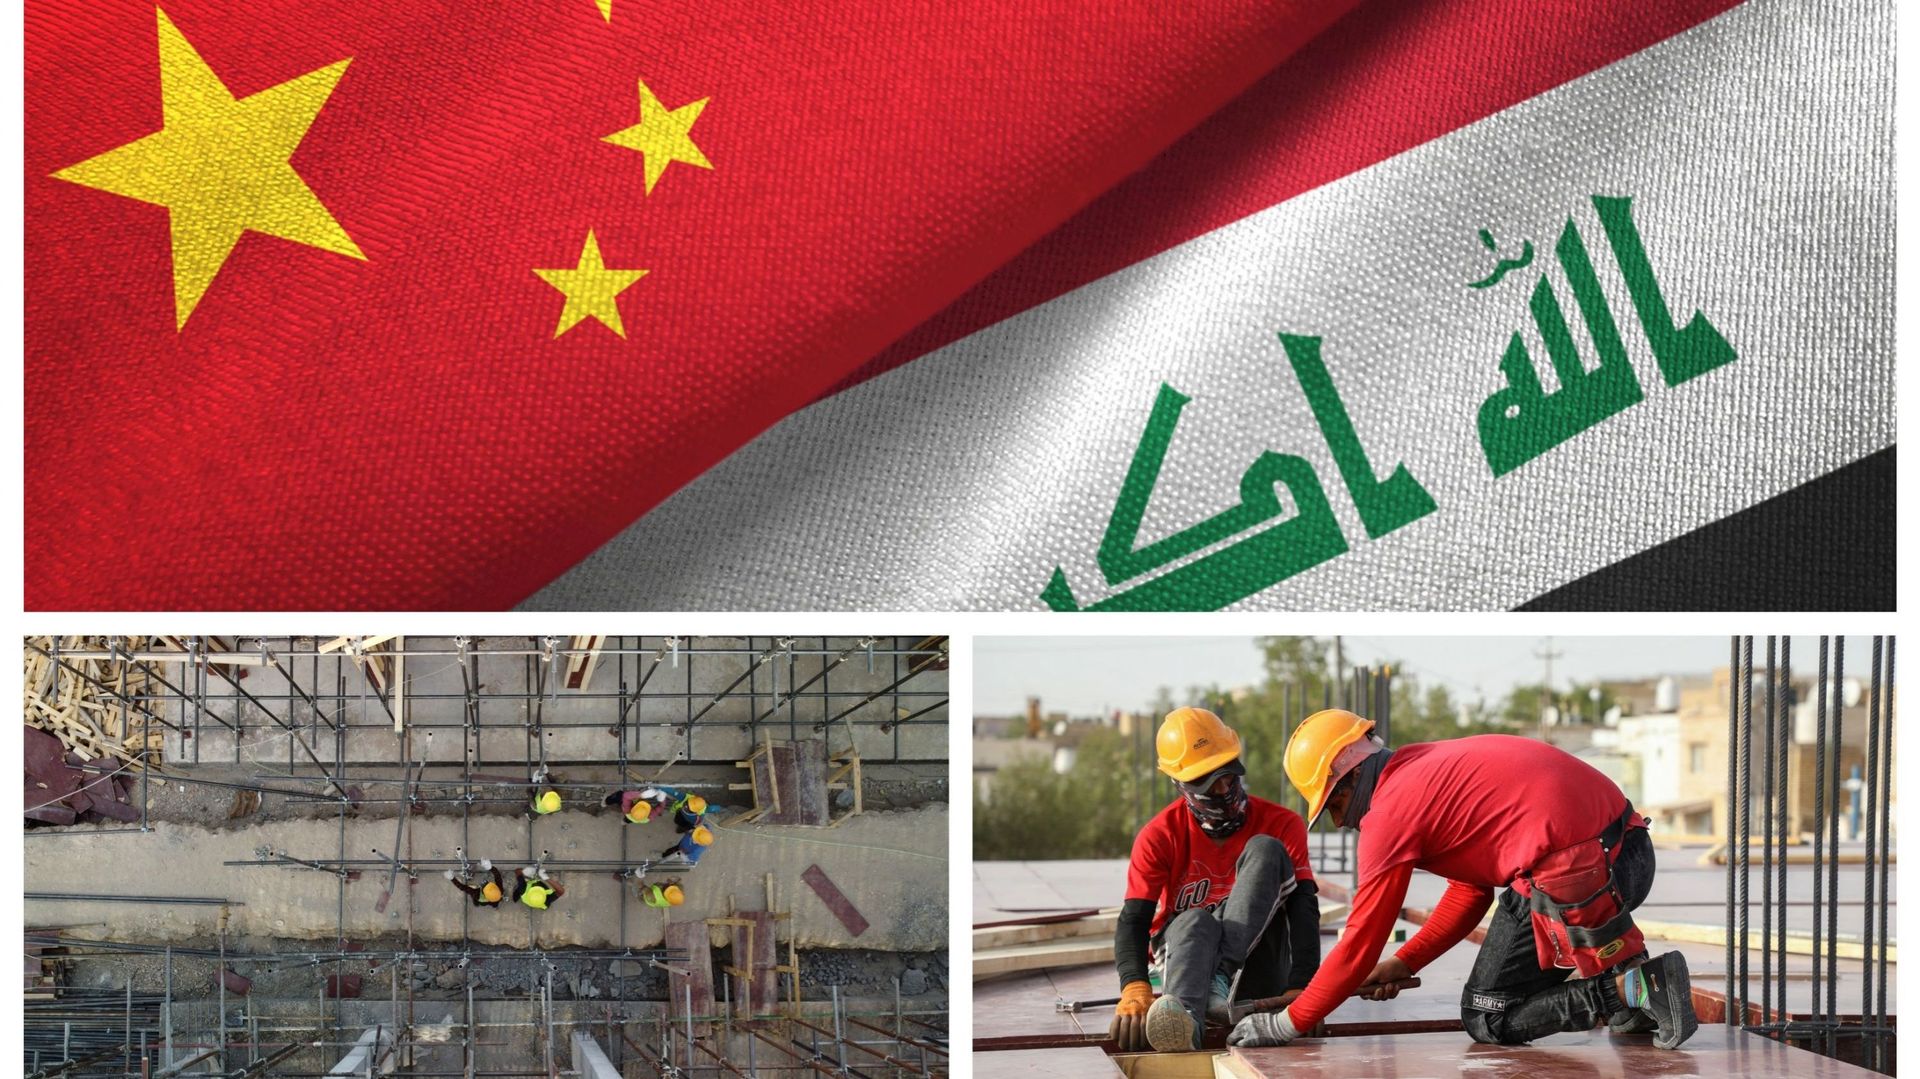 Des ouvriers travaillent sur le chantier de construction d’une école, dans le cadre de l’accord "pétrole contre construction" entre l’Irak et la Chine, dans le quartier de Sumer de la ville de Nasiriyah, dans la province de Dhi Qar, au sud de l’Irak, le 2